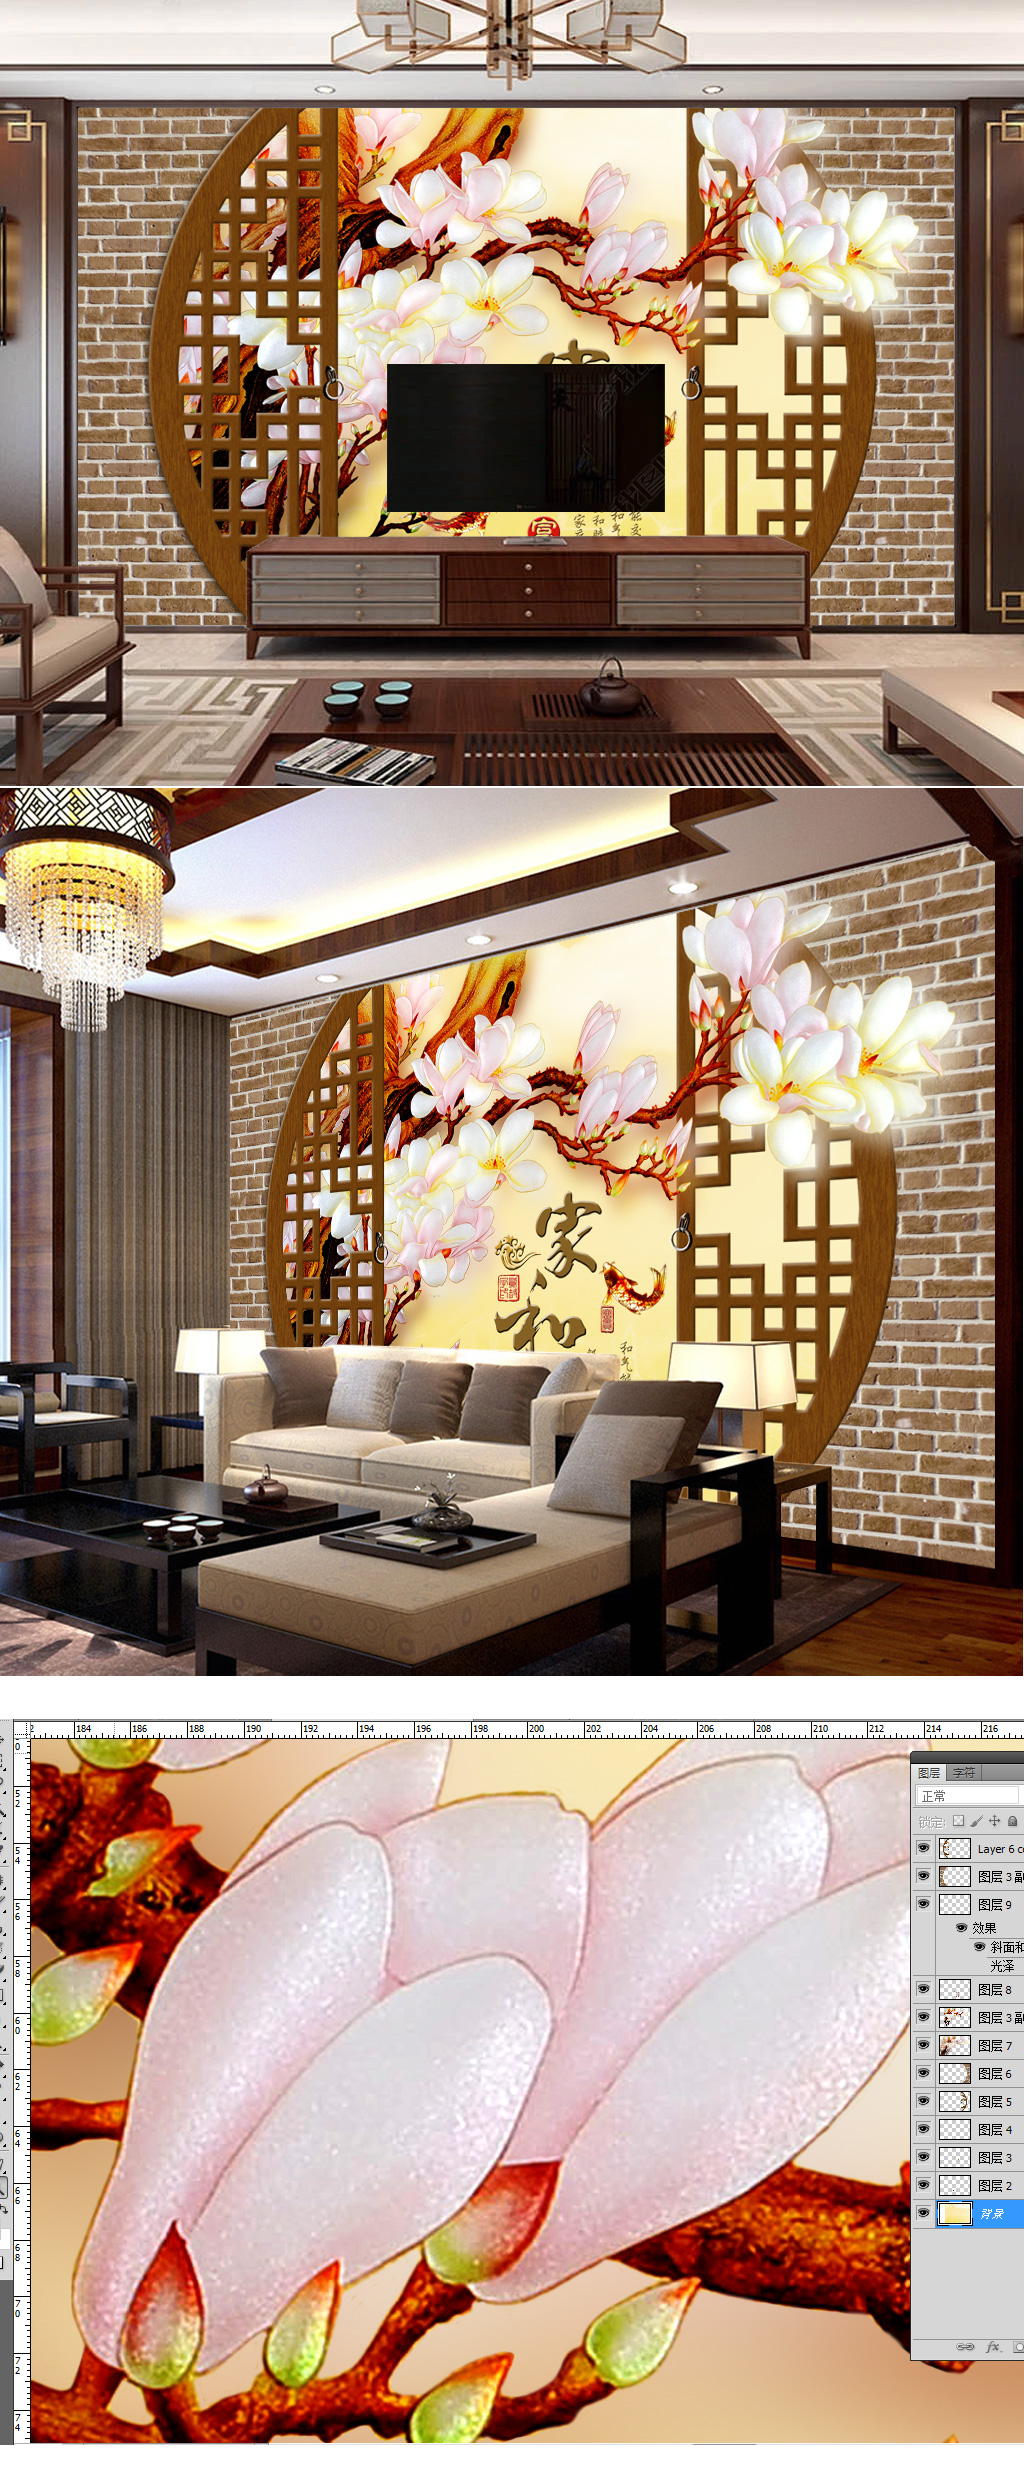 中式红砖墙彩雕玉兰花电视背景墙